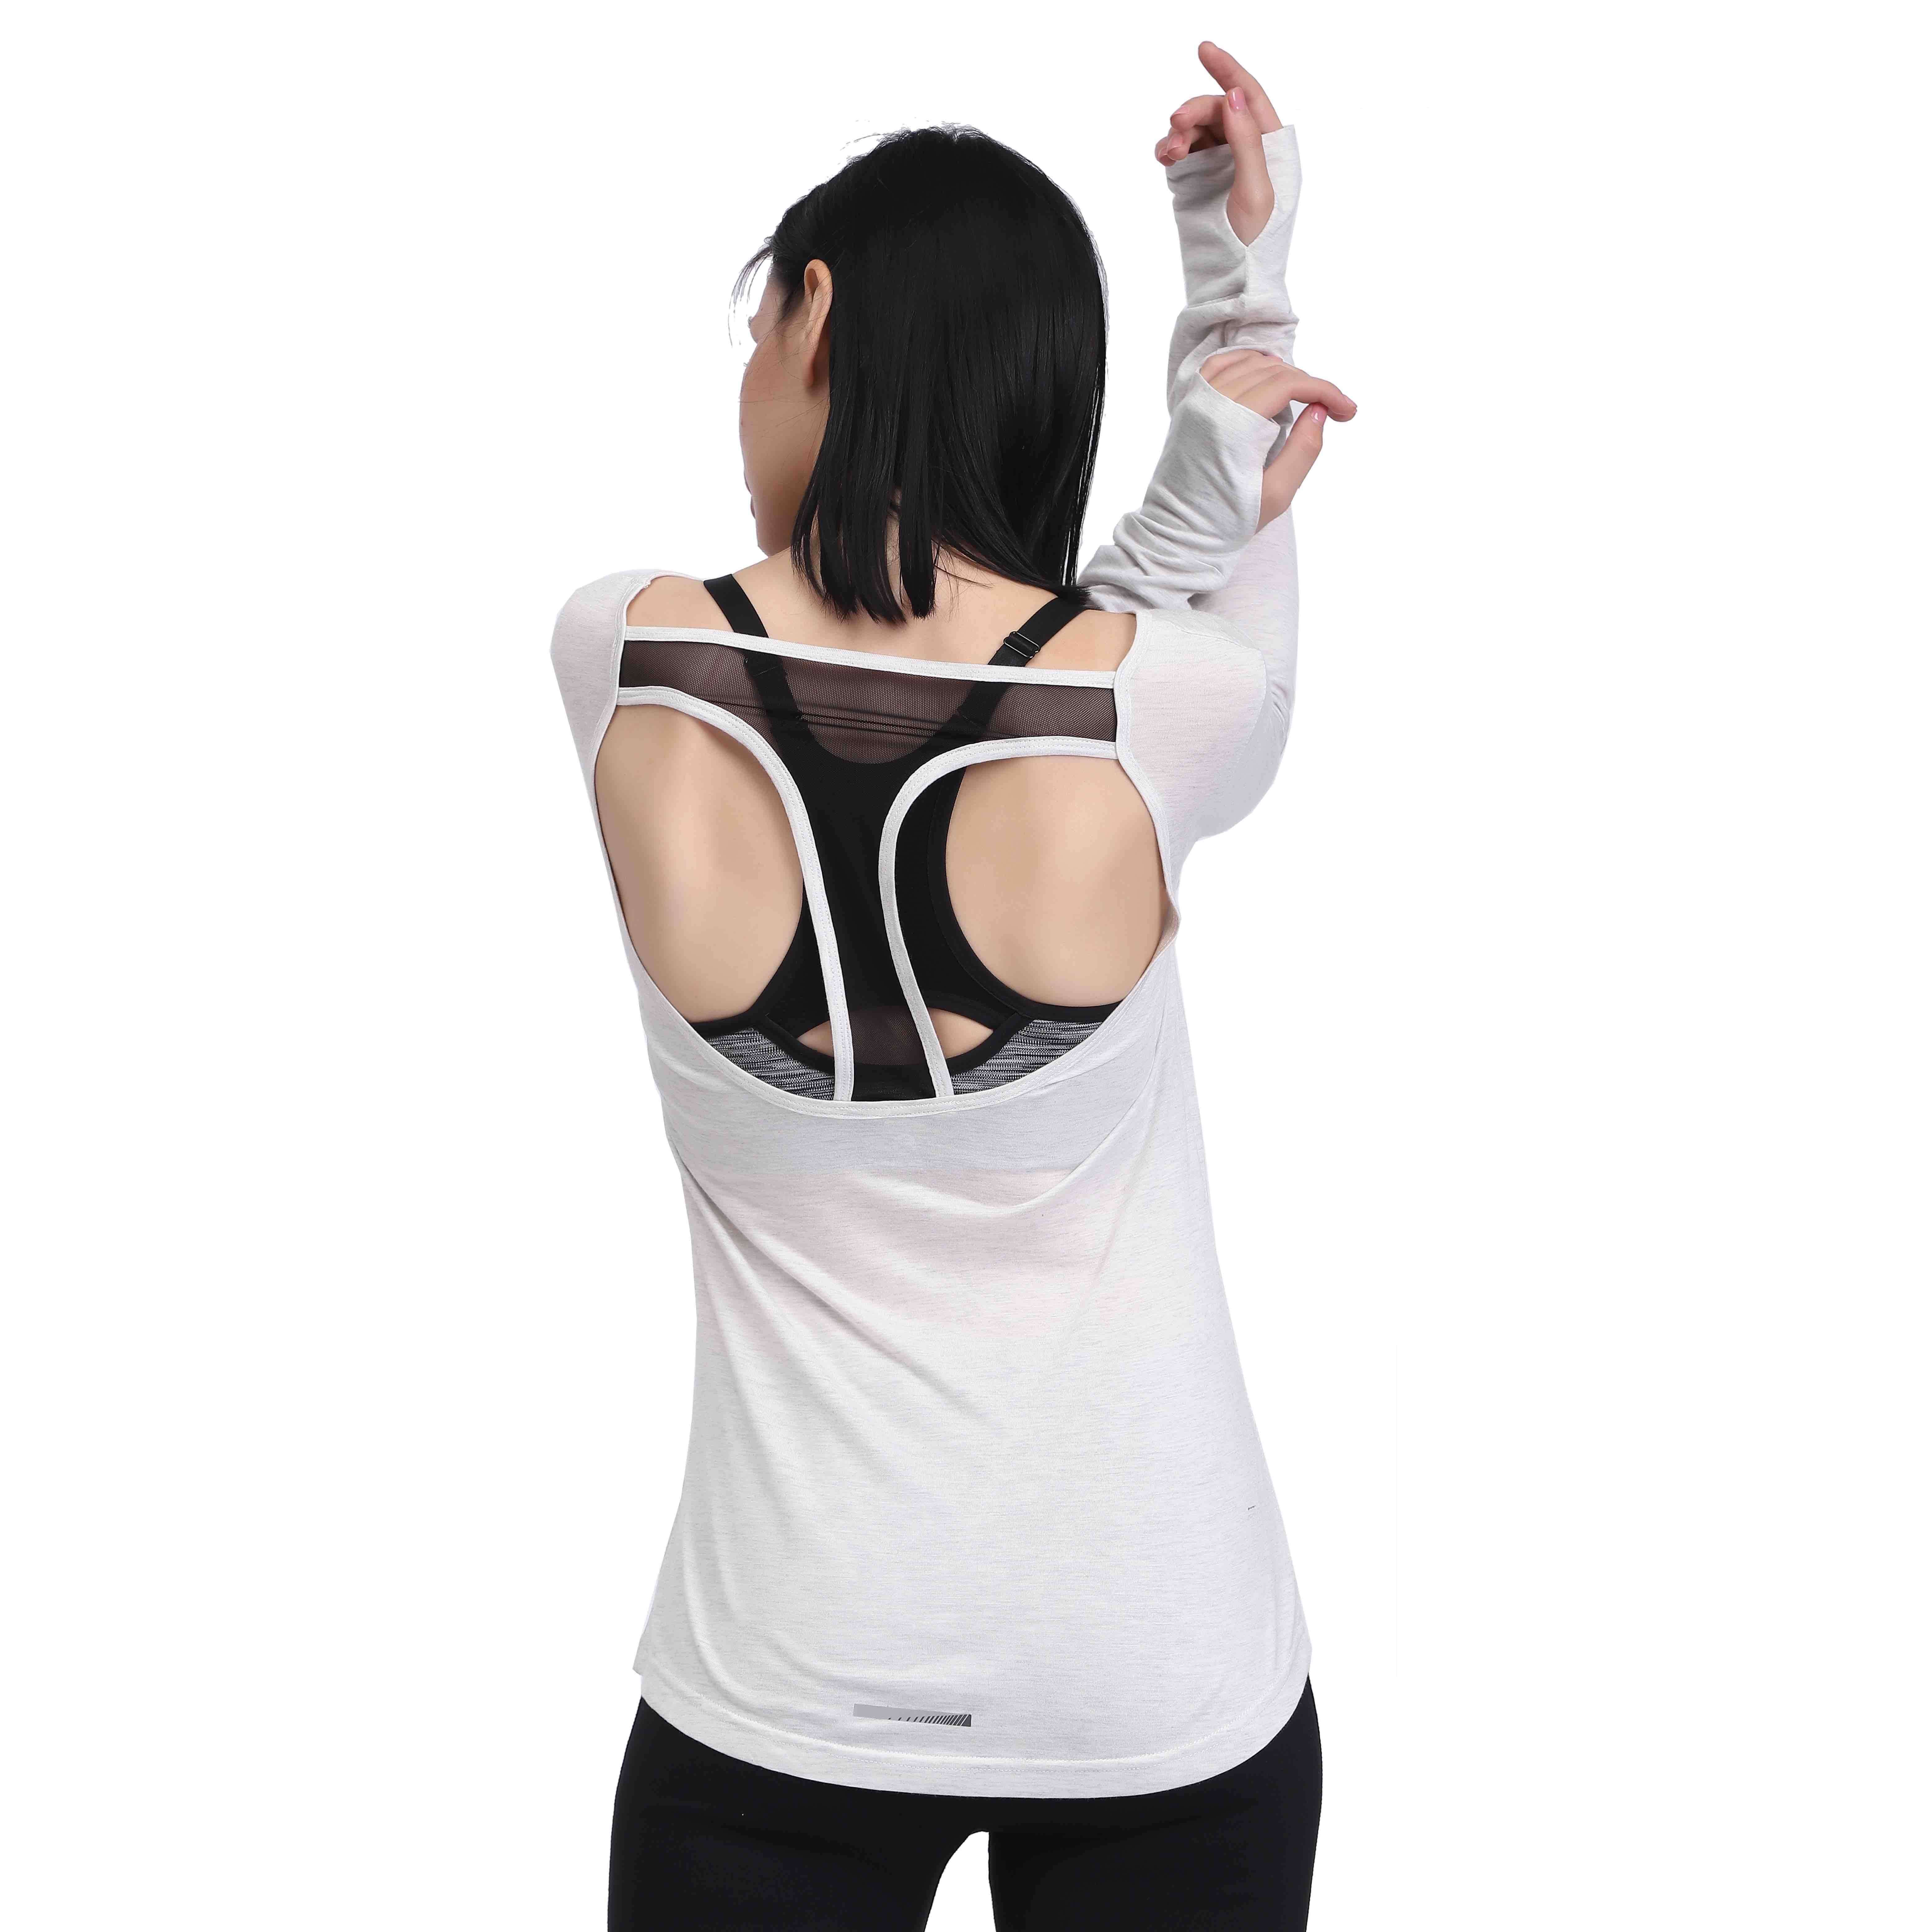 "Camisas de yoga blancas de manga larga con espalda abierta para mujer"